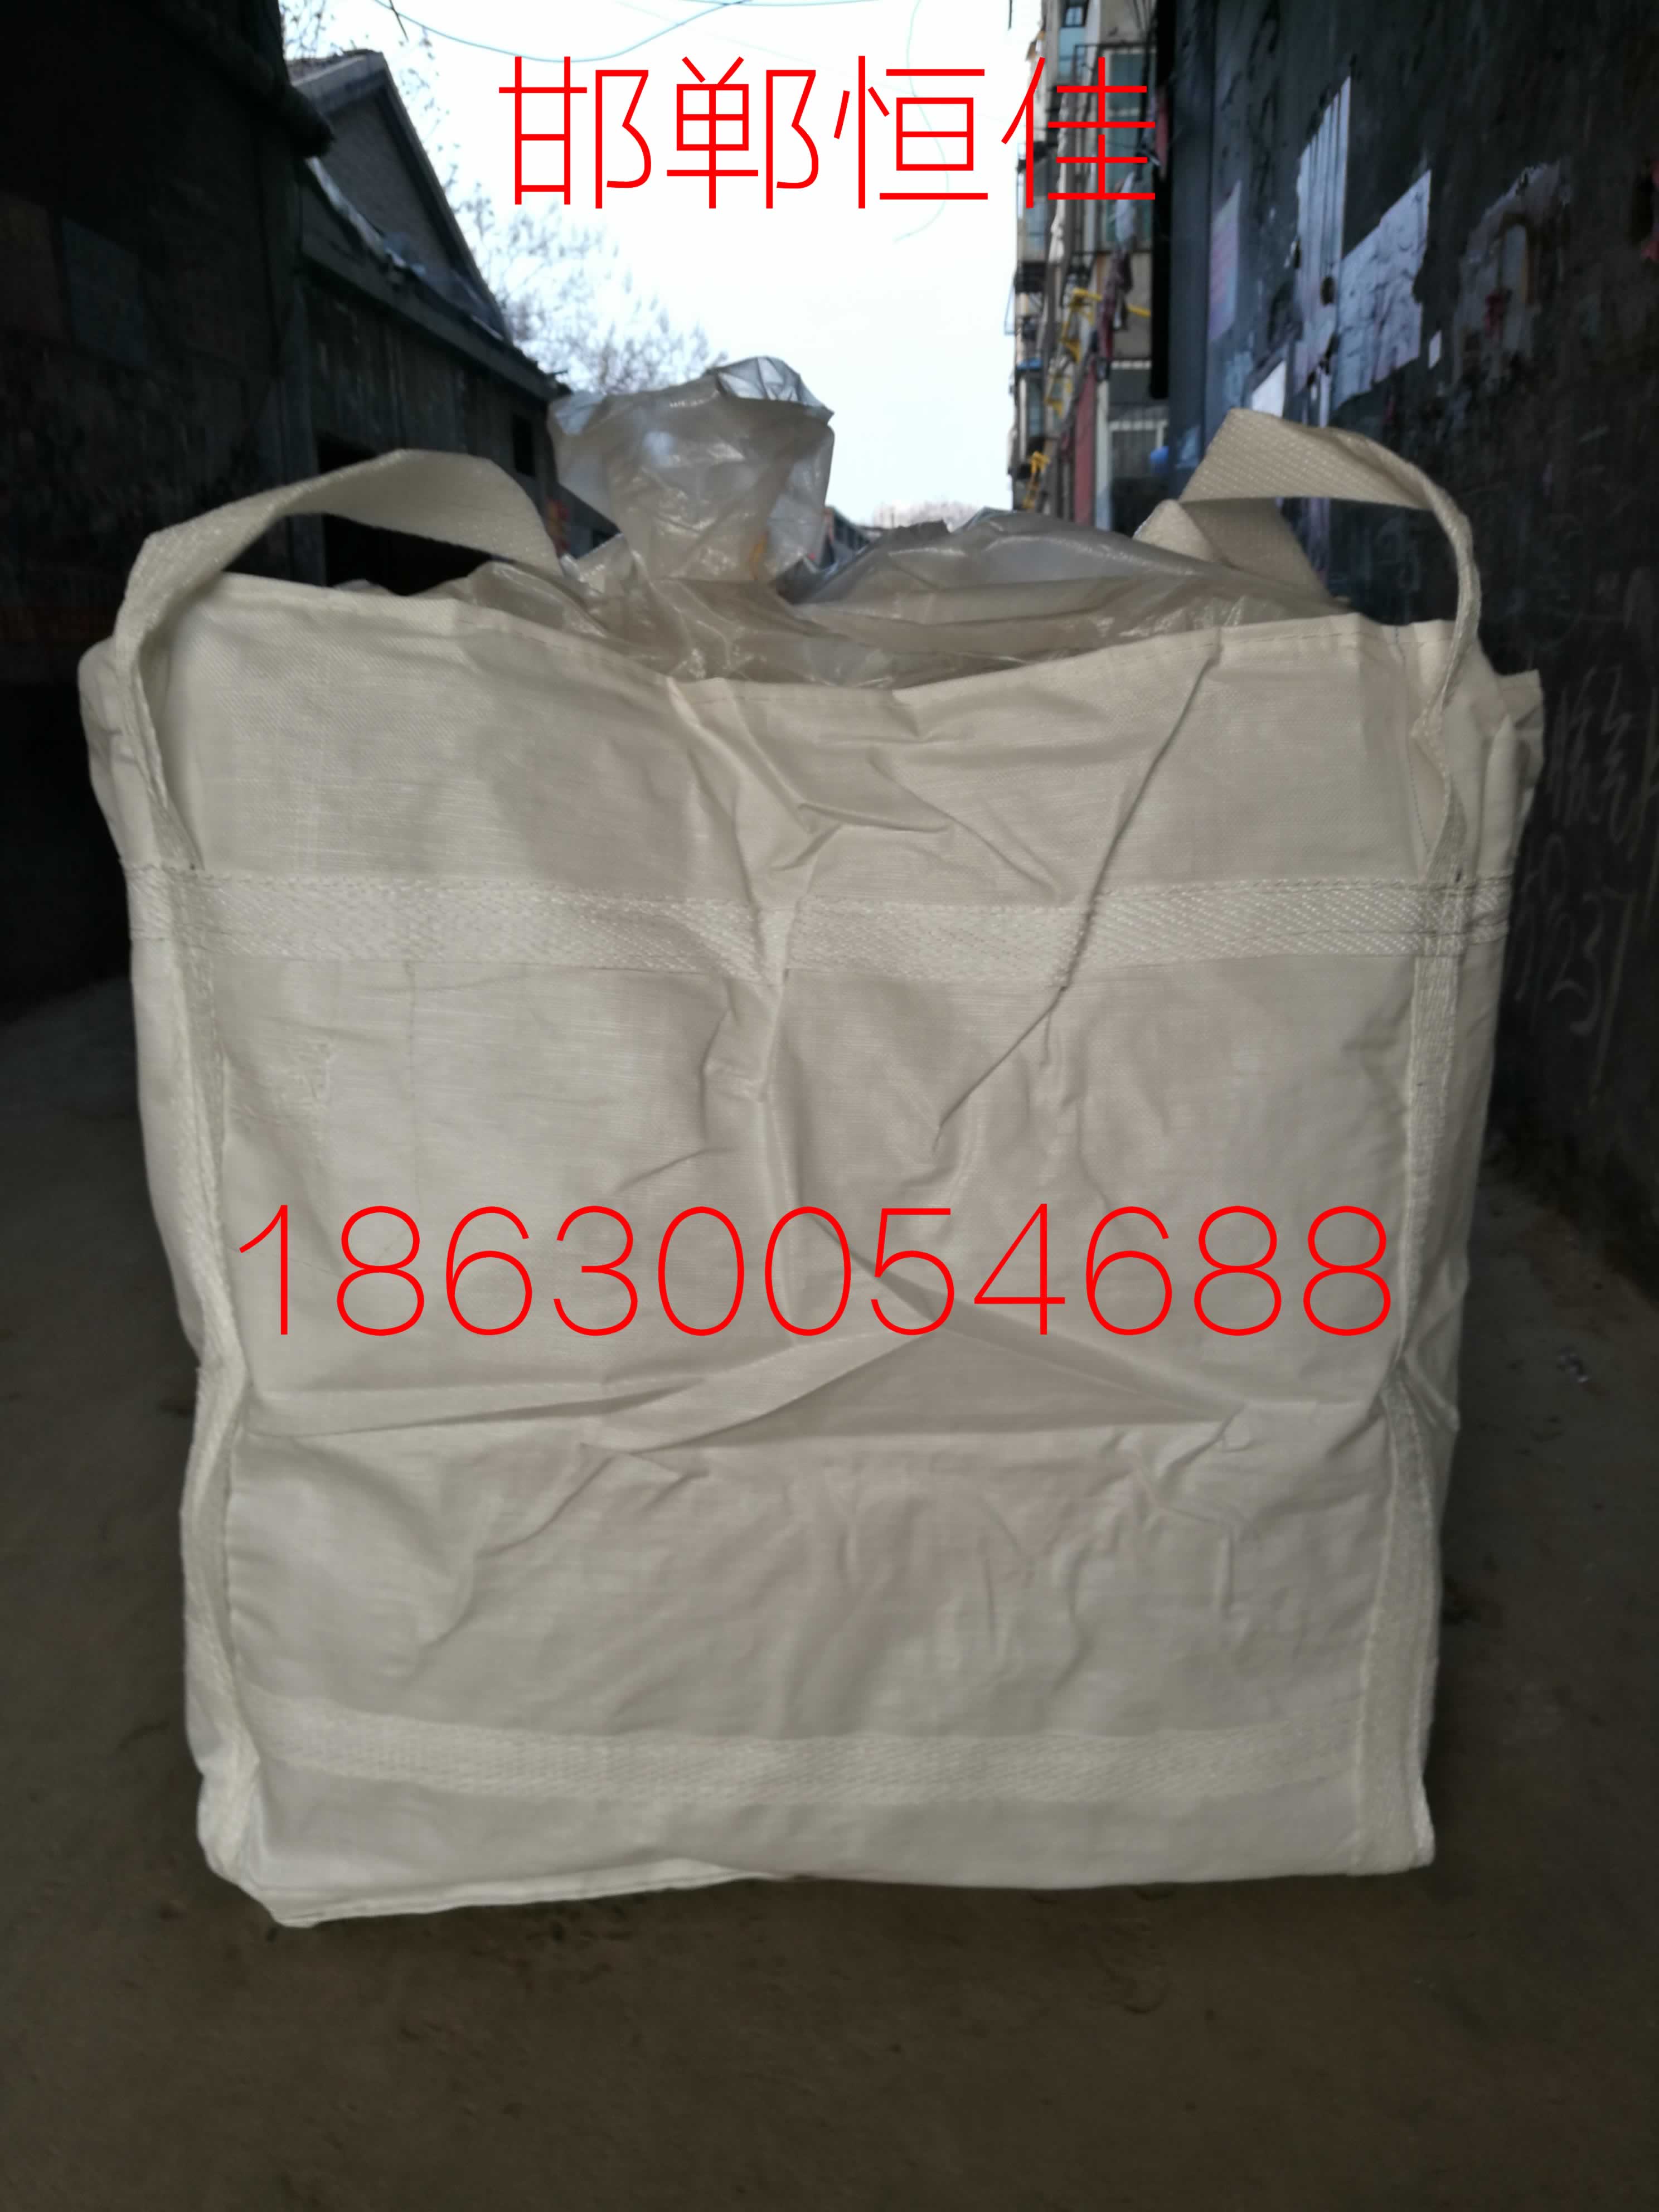 集装袋生产厂家邯郸市恒佳编织袋有限公司图片